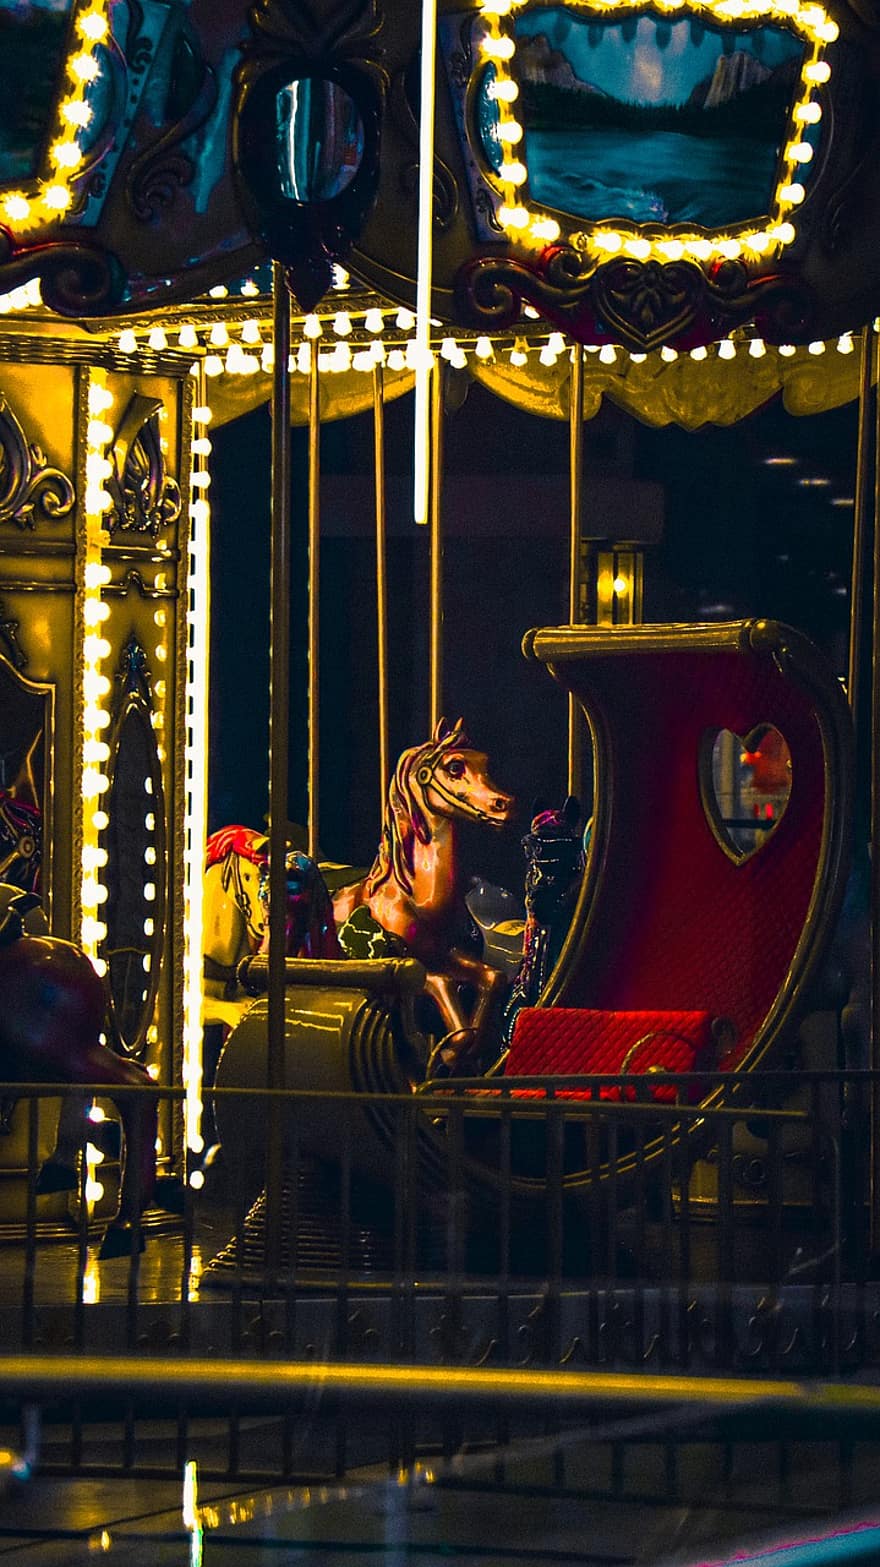 карусель, парк развлечений, ночь, карнавал, Тематический парк аттракционов, путешествующий карнавал, веселье, поездка в парк развлечений, освещенный, лошадь, осветительное оборудование